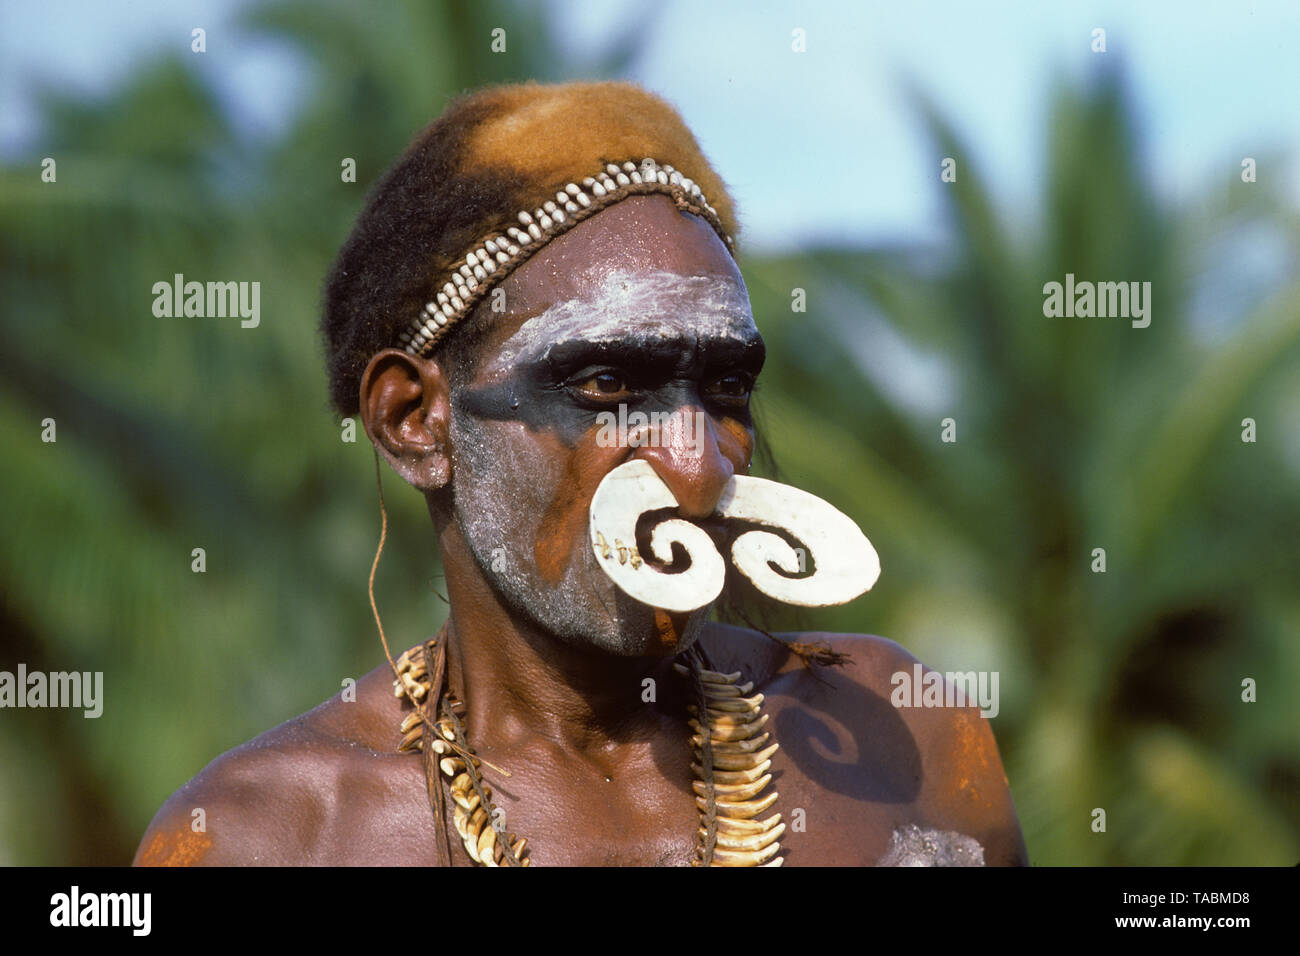 Asmat Personen: ethnische Gruppe leben in der Provinz Papua in Indonesien, entlang der Arafura Meer. Asmat Mann, Agats-Sjuru. Foto aufgenommen von Francois Goh Stockfoto